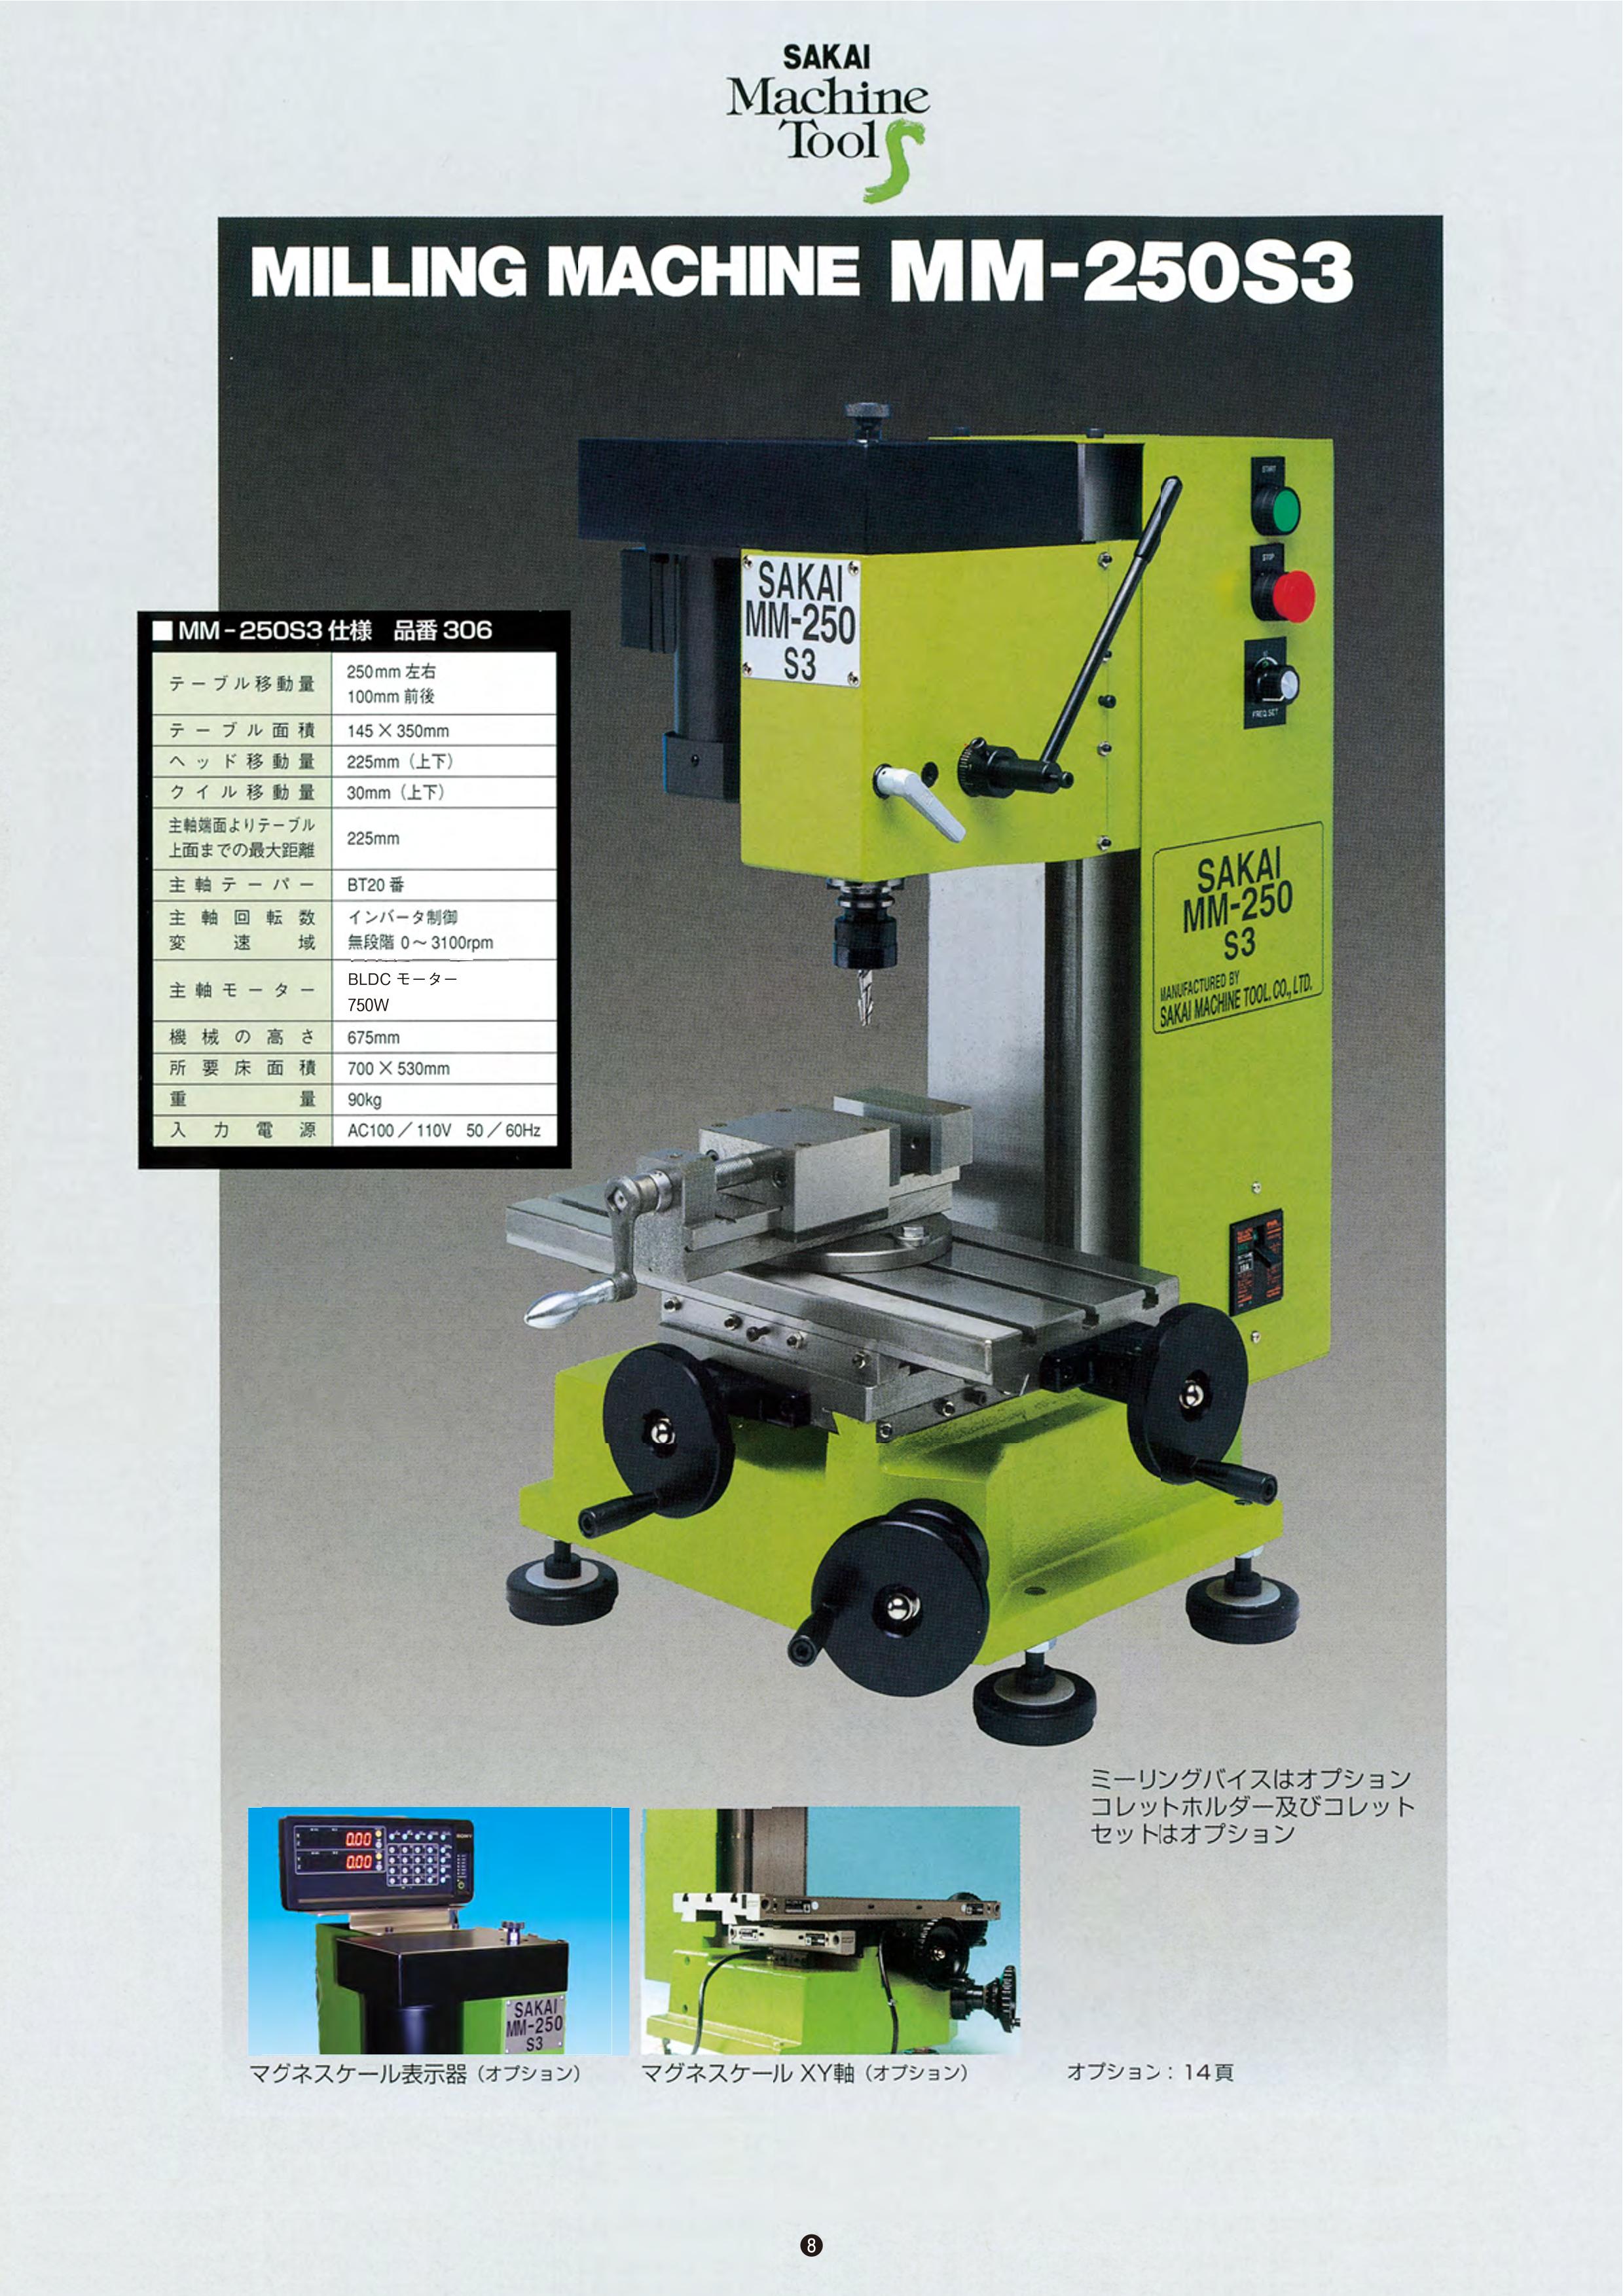 SAKAI Machine Tool MILLING MACHINE MM-250S3 (有限会社サカイマシンツール) のカタログ無料ダウンロード |  Metoree